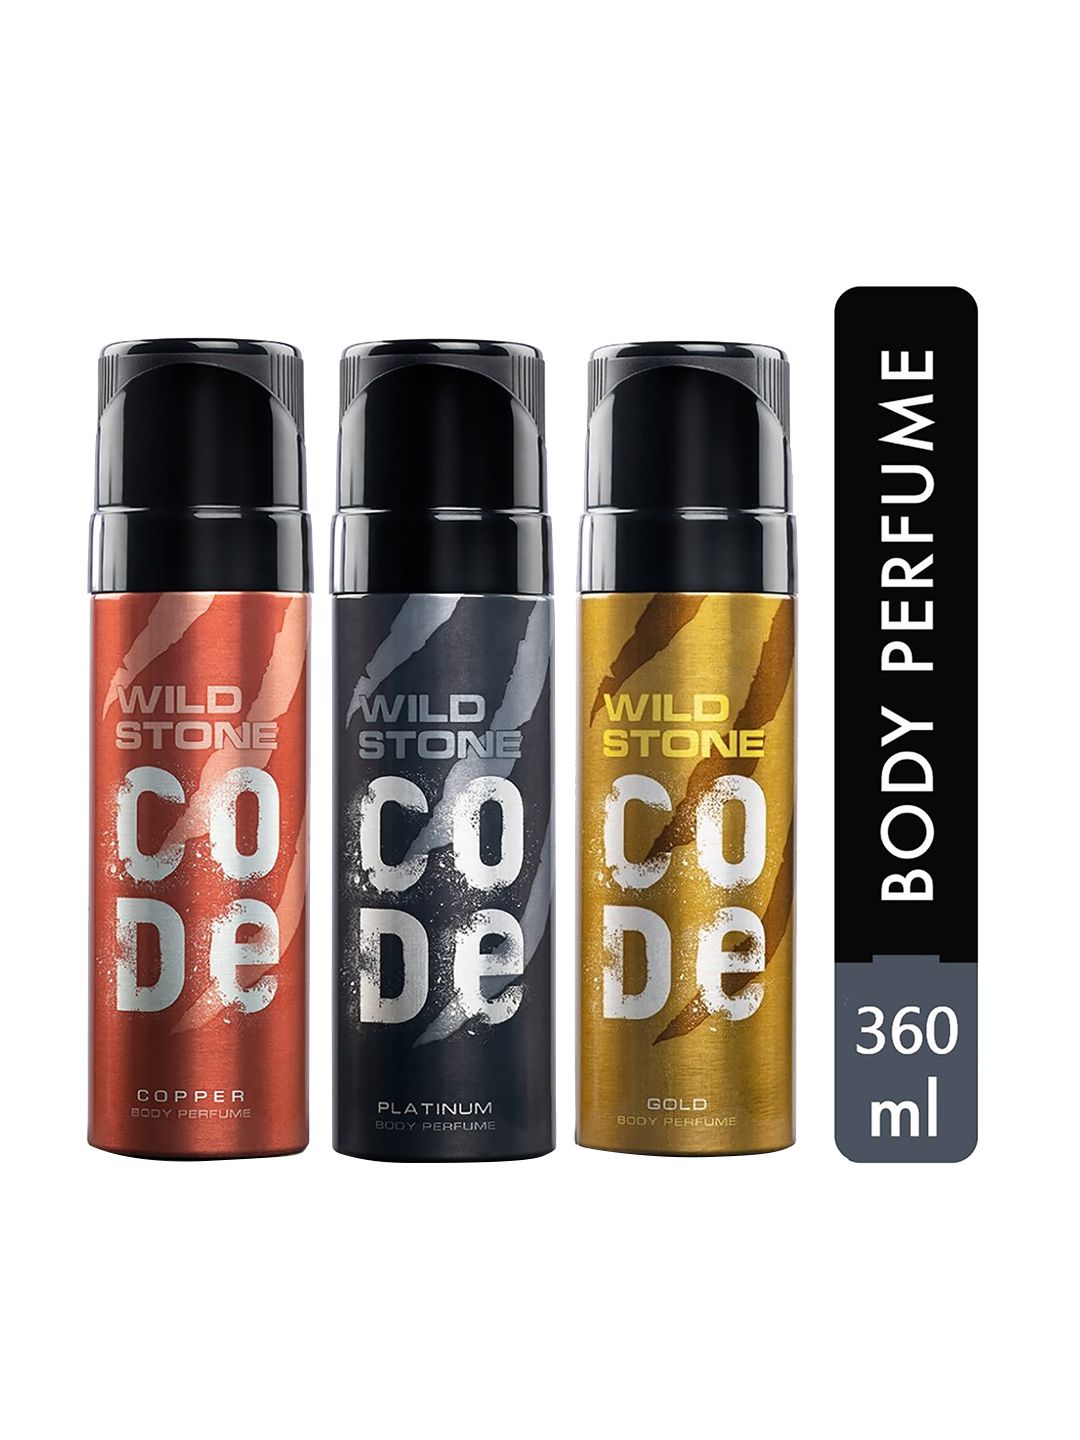 Wild Stone Men Set Of 3 Code Gold & Platinum & Copper Body Sprays 360ml Price in India